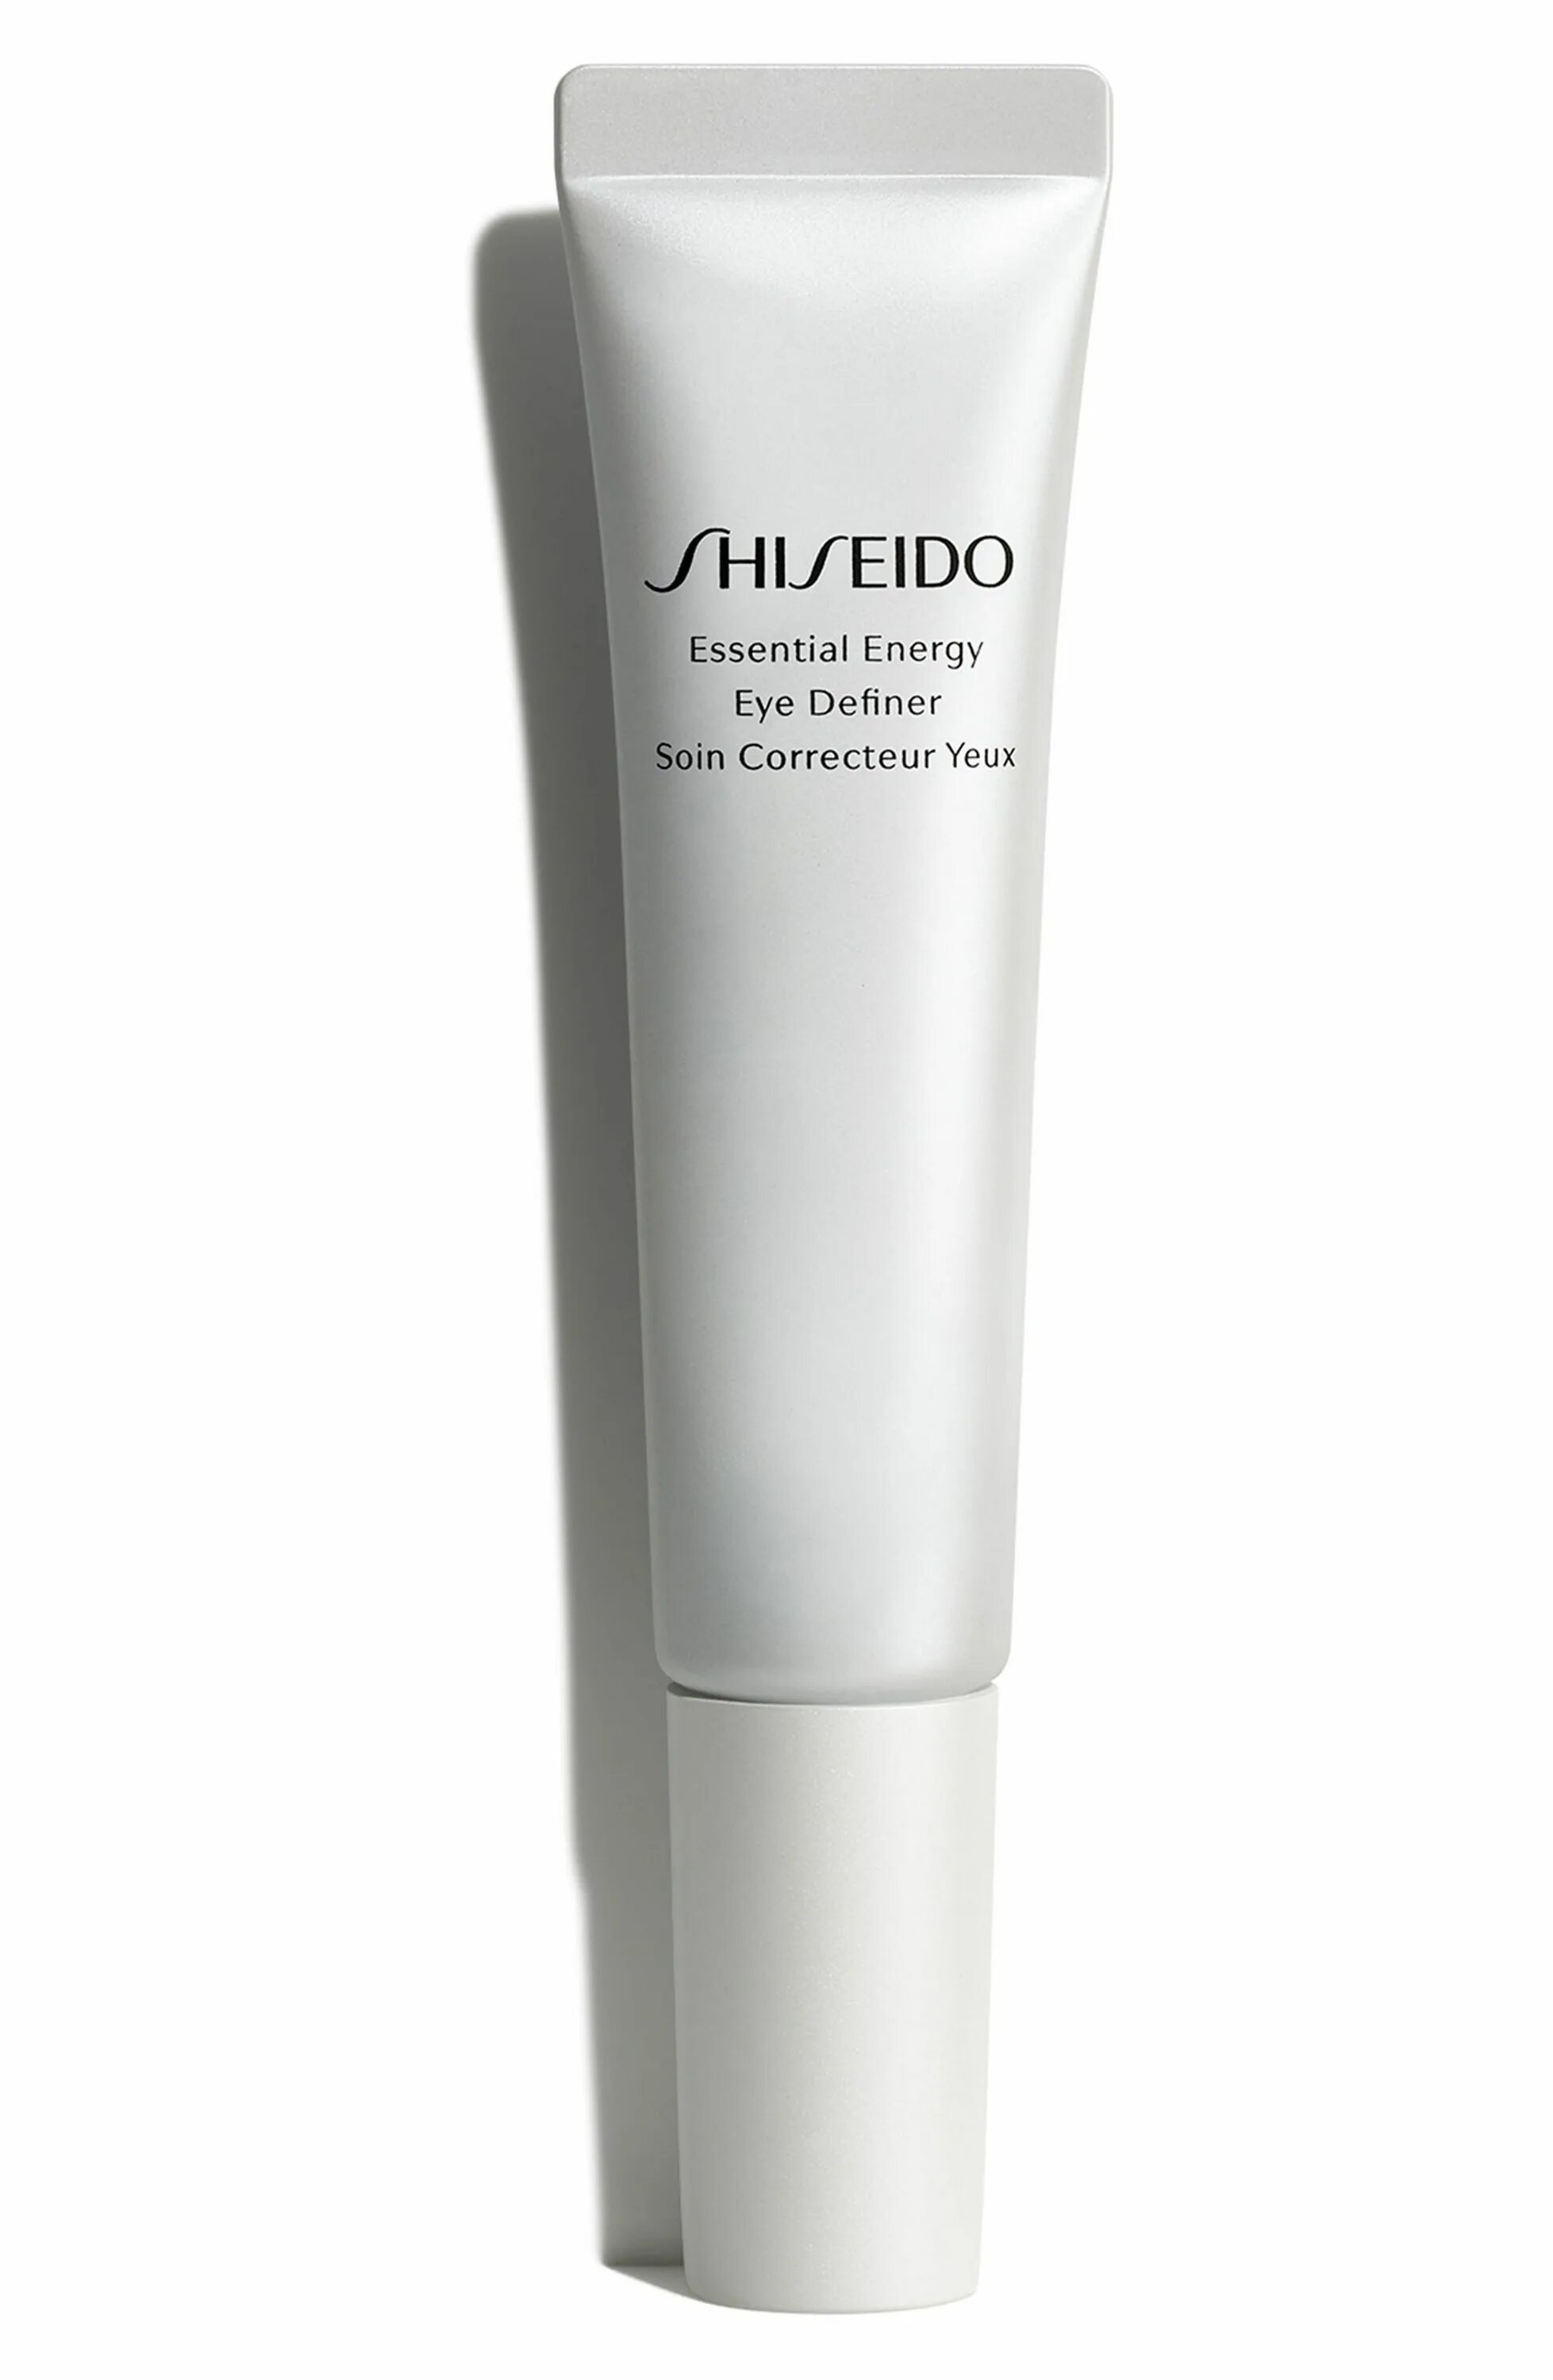 Крем Shiseido Essential Energy. Шисейдо Essential Energy Eye Definer. Shiseido preparation Essential Energy Eye Definer. Energetic Eye Lift многофункциональный мужской крем для контура глаз 15 мл Nirvel.